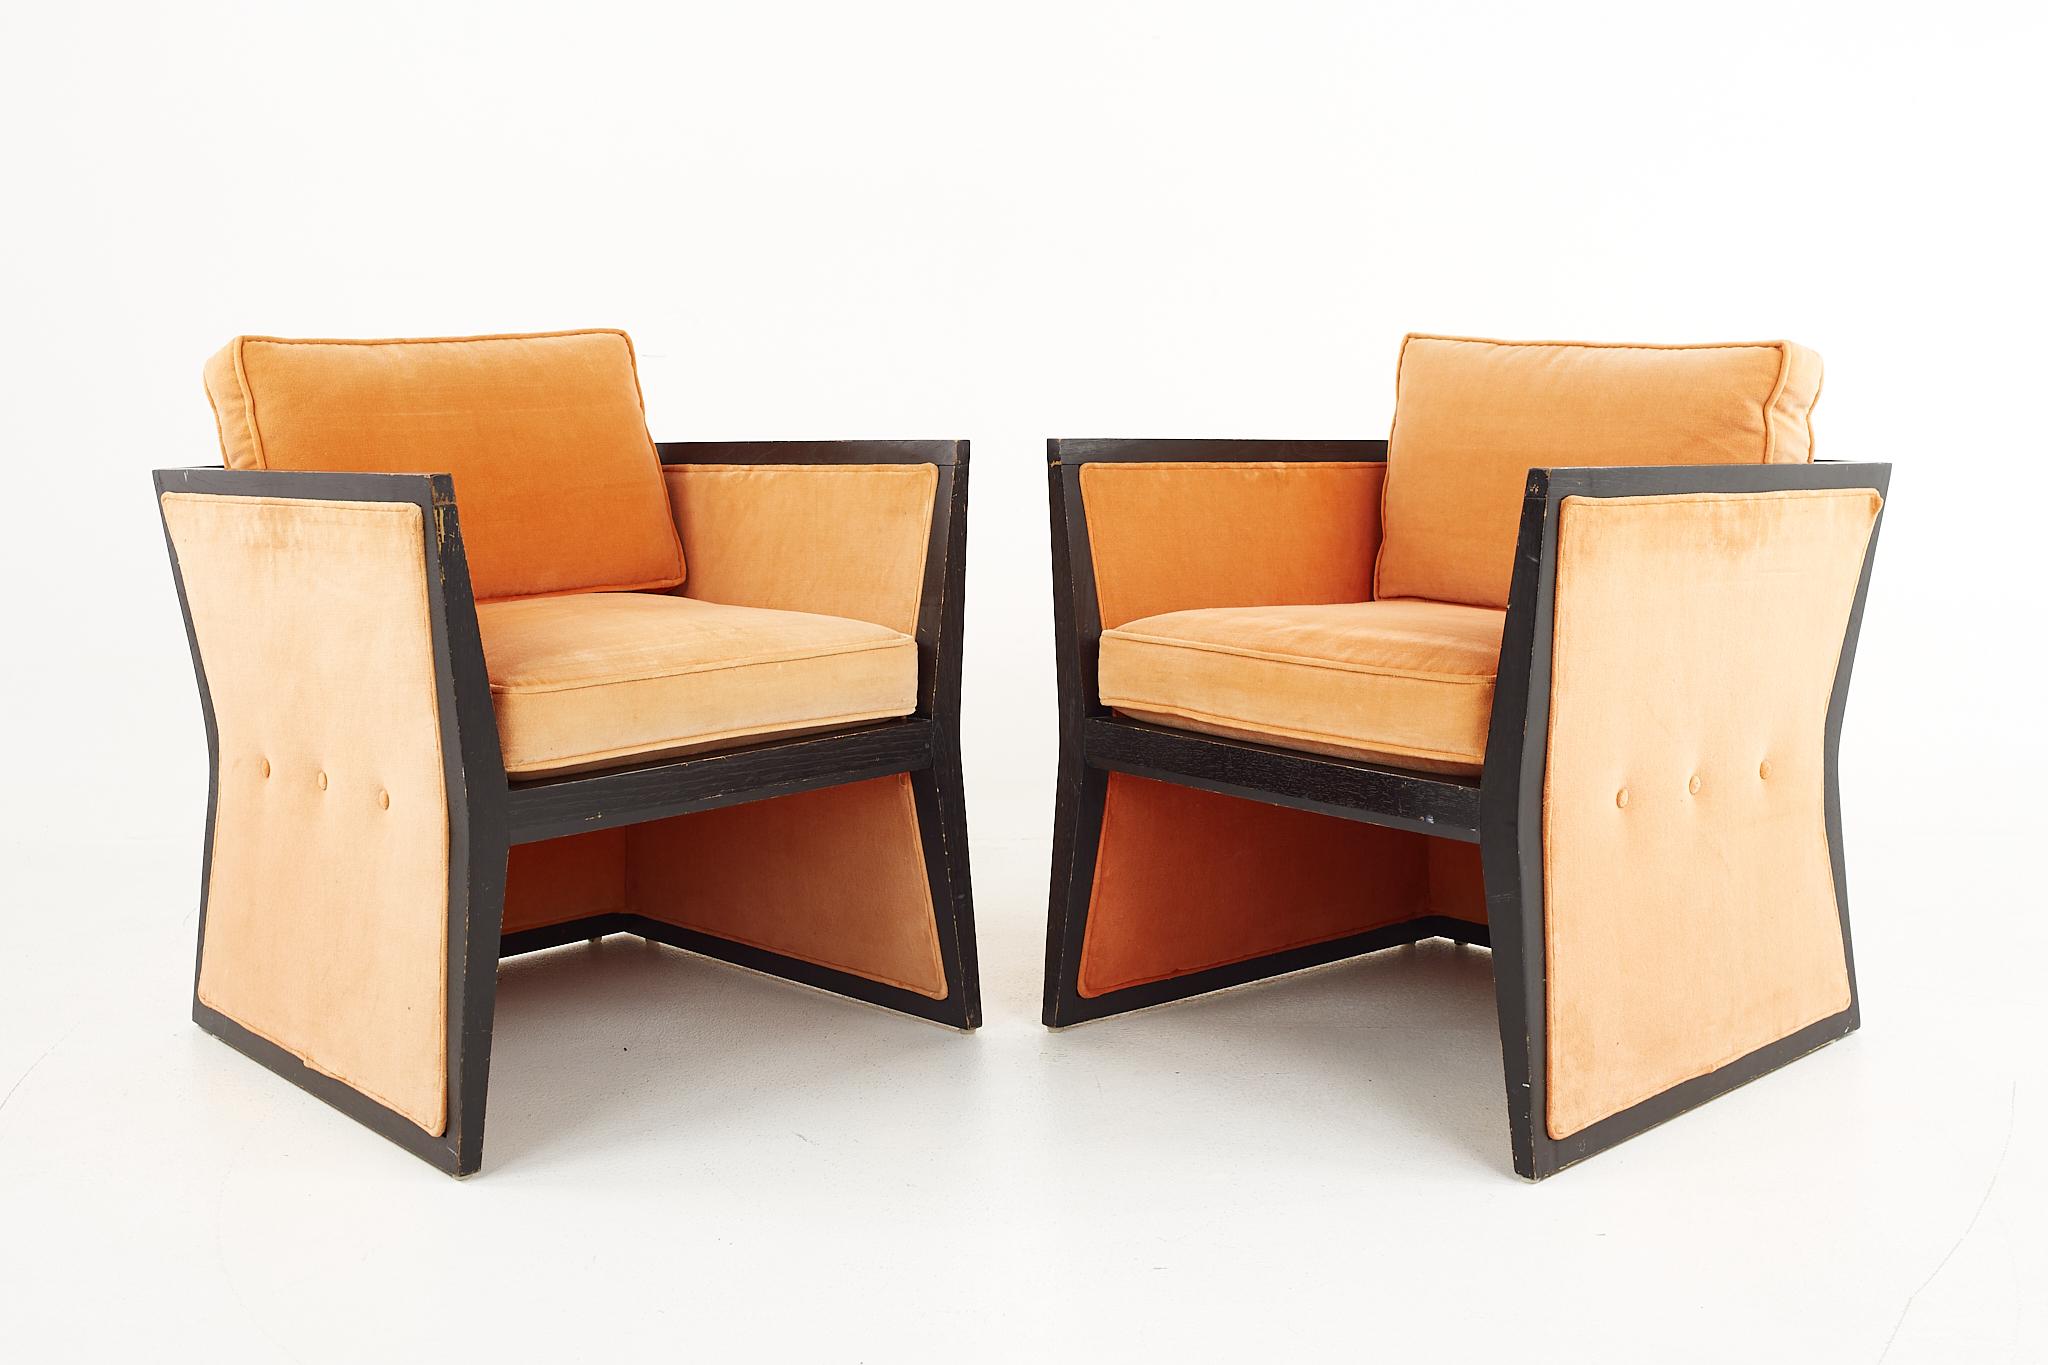 Loungesessel im Stil von Harvey Probber aus der Mitte des Jahrhunderts - ein Paar

Jeder Stuhl misst: 26,5 breit x 26 tief x 30 hoch, mit einer Sitzhöhe von 18 Zoll und einer Armhöhe von 25,25

Alle Möbelstücke sind in einem so genannten